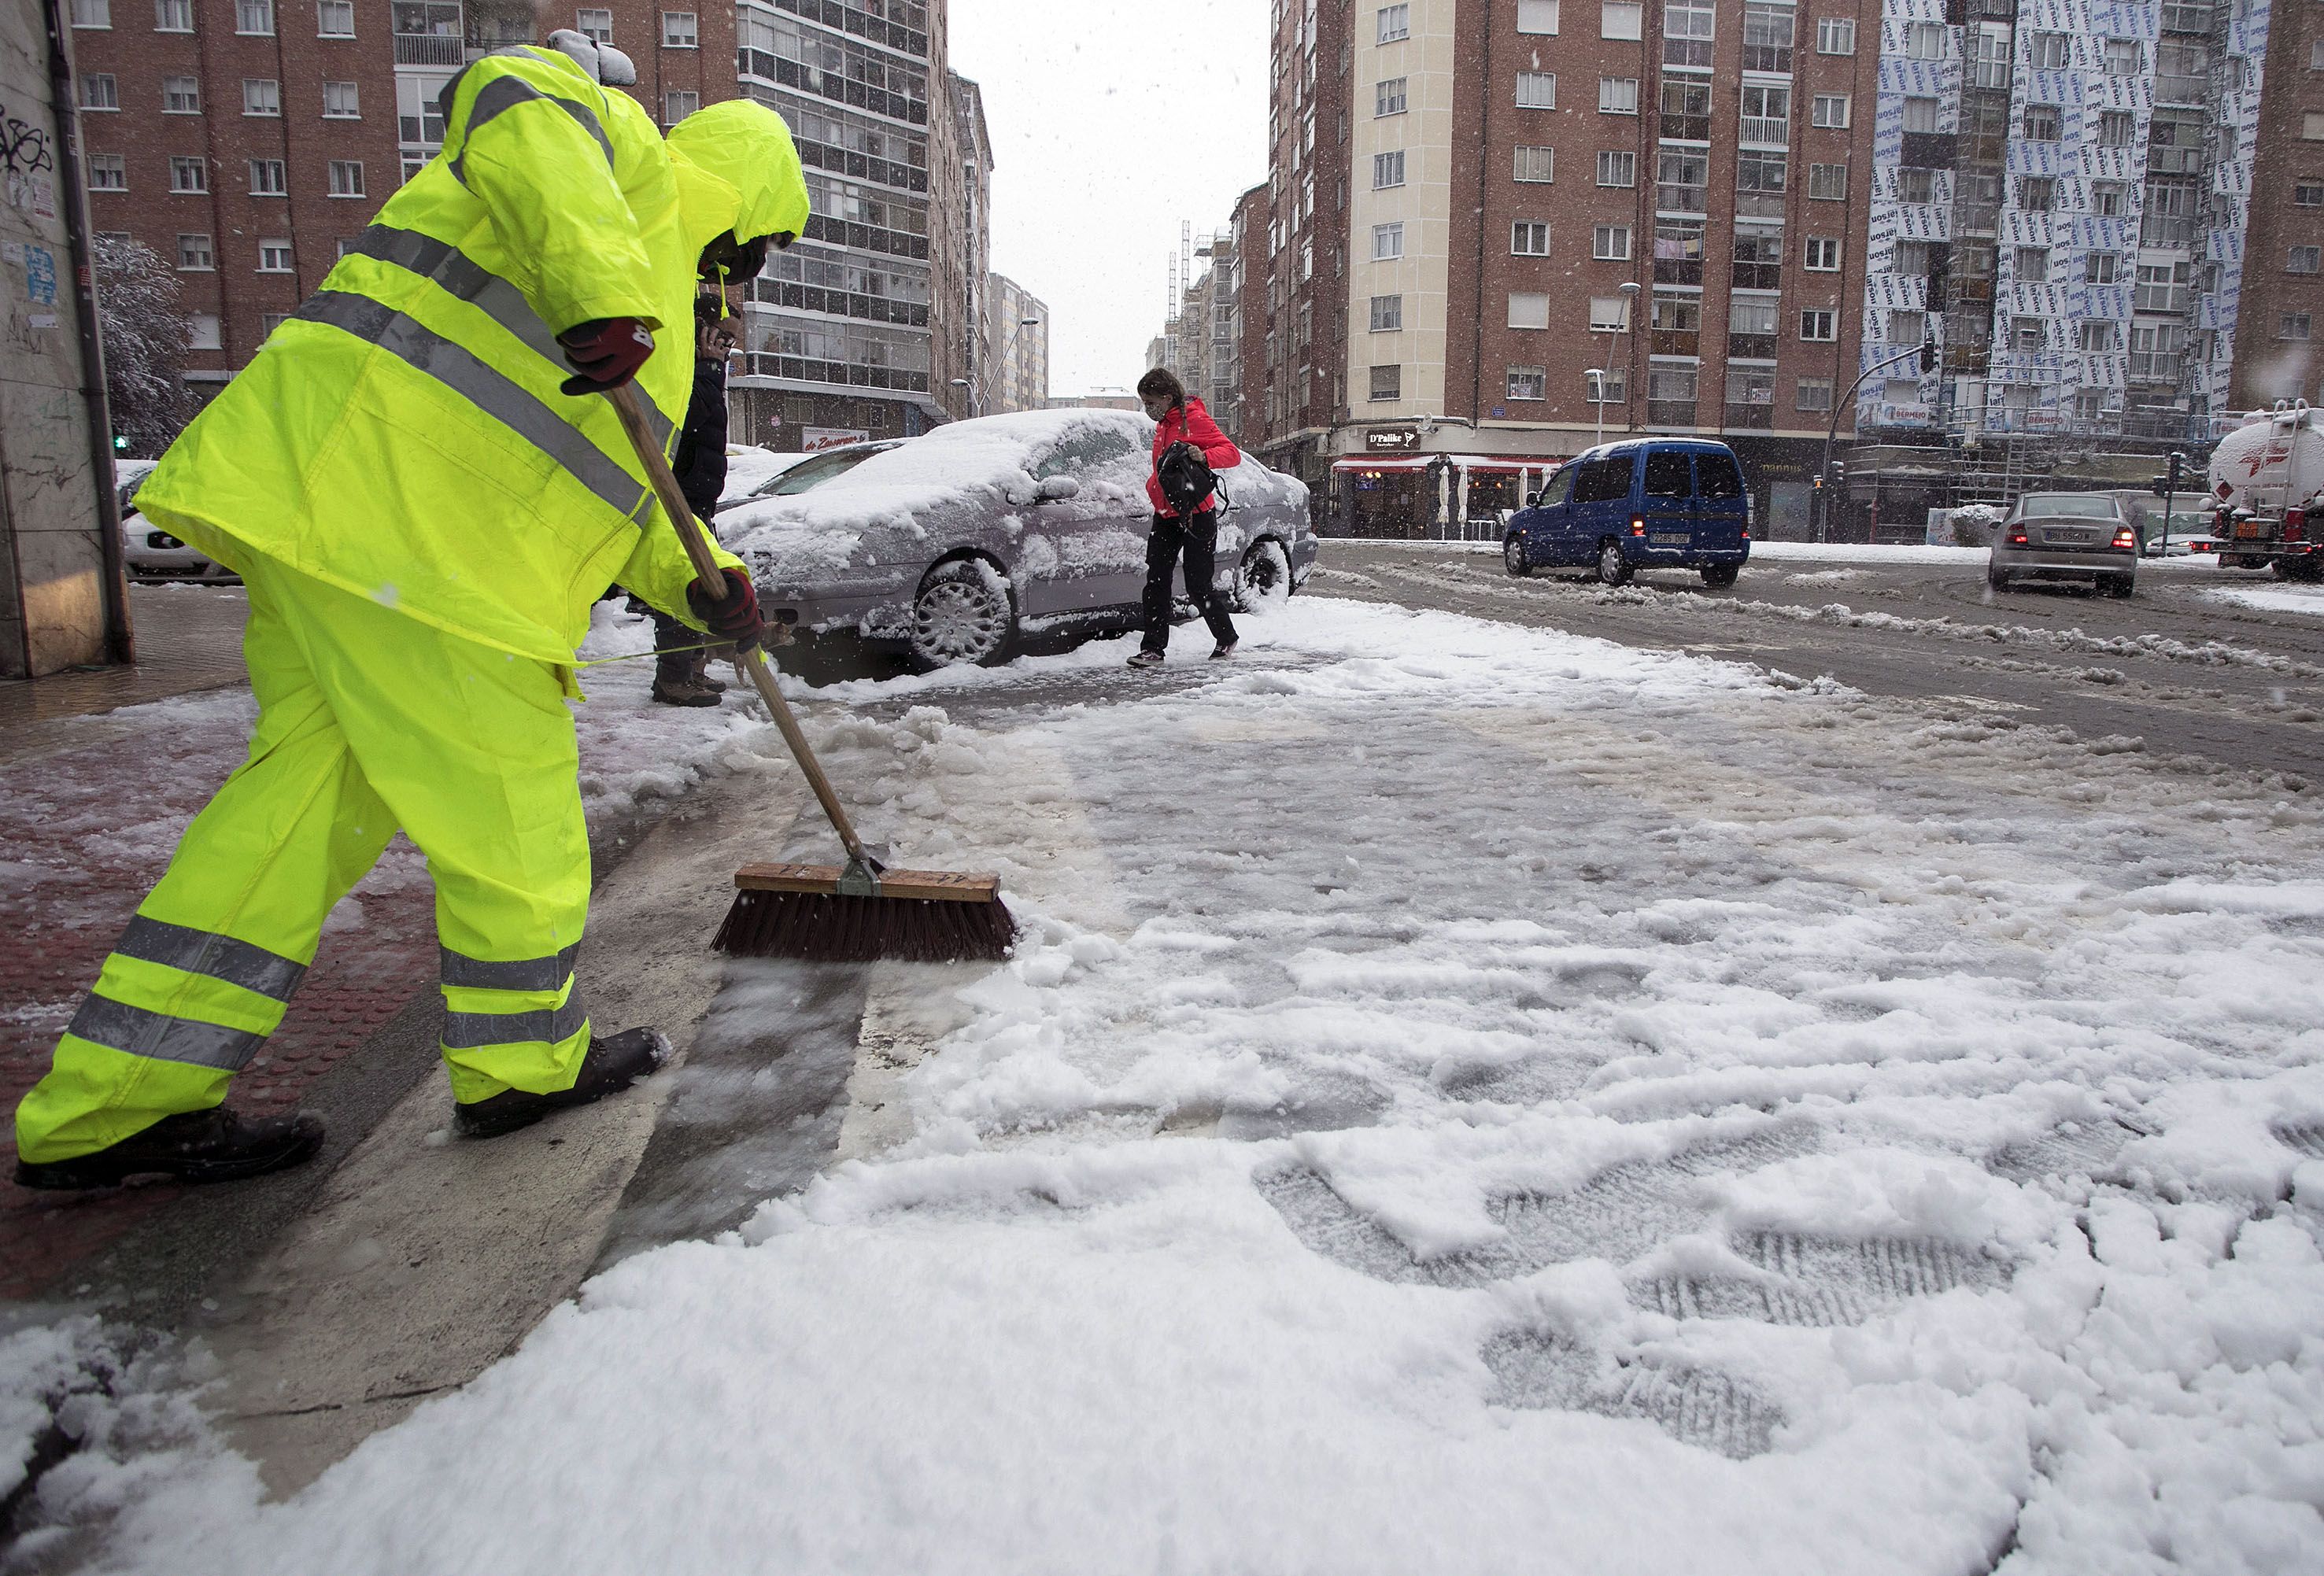 EuropaPress 3597063 empleado limpia via llena nieve burgos castilla leon espana marzo 2021